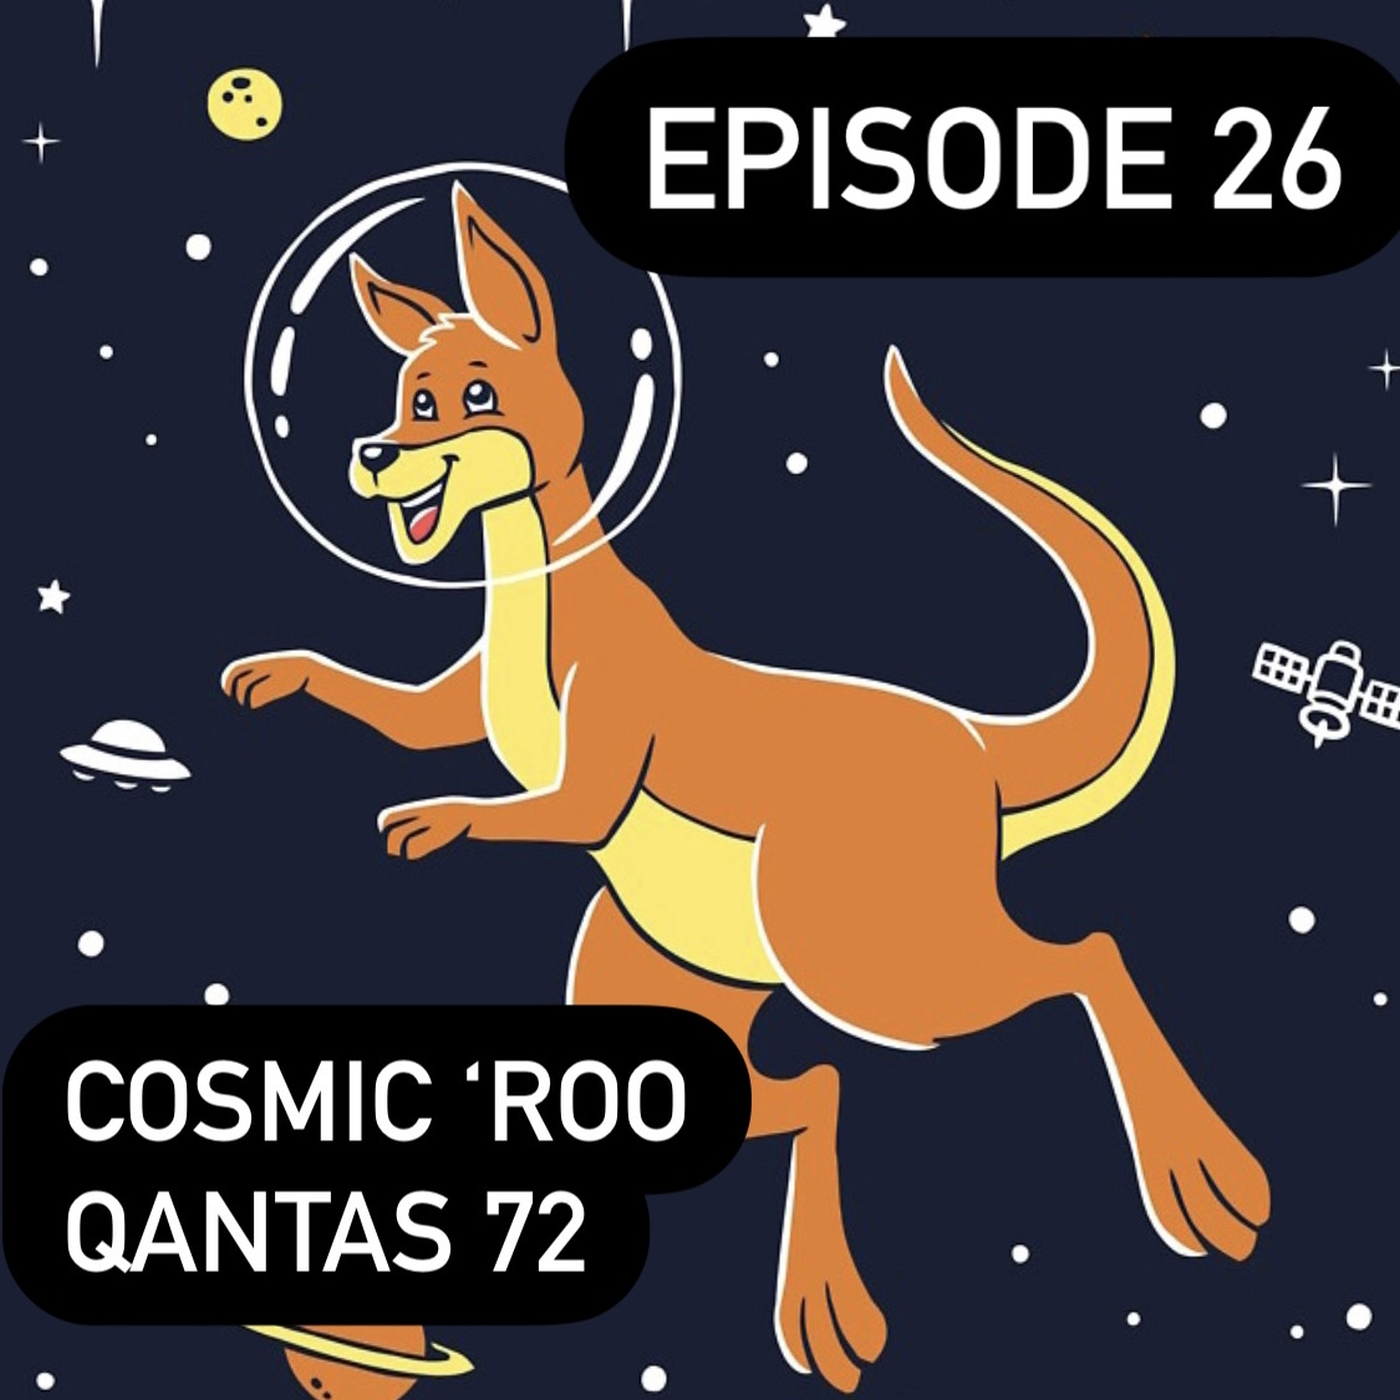 26. Cosmic 'Roo - Qantas 72 hero artwork